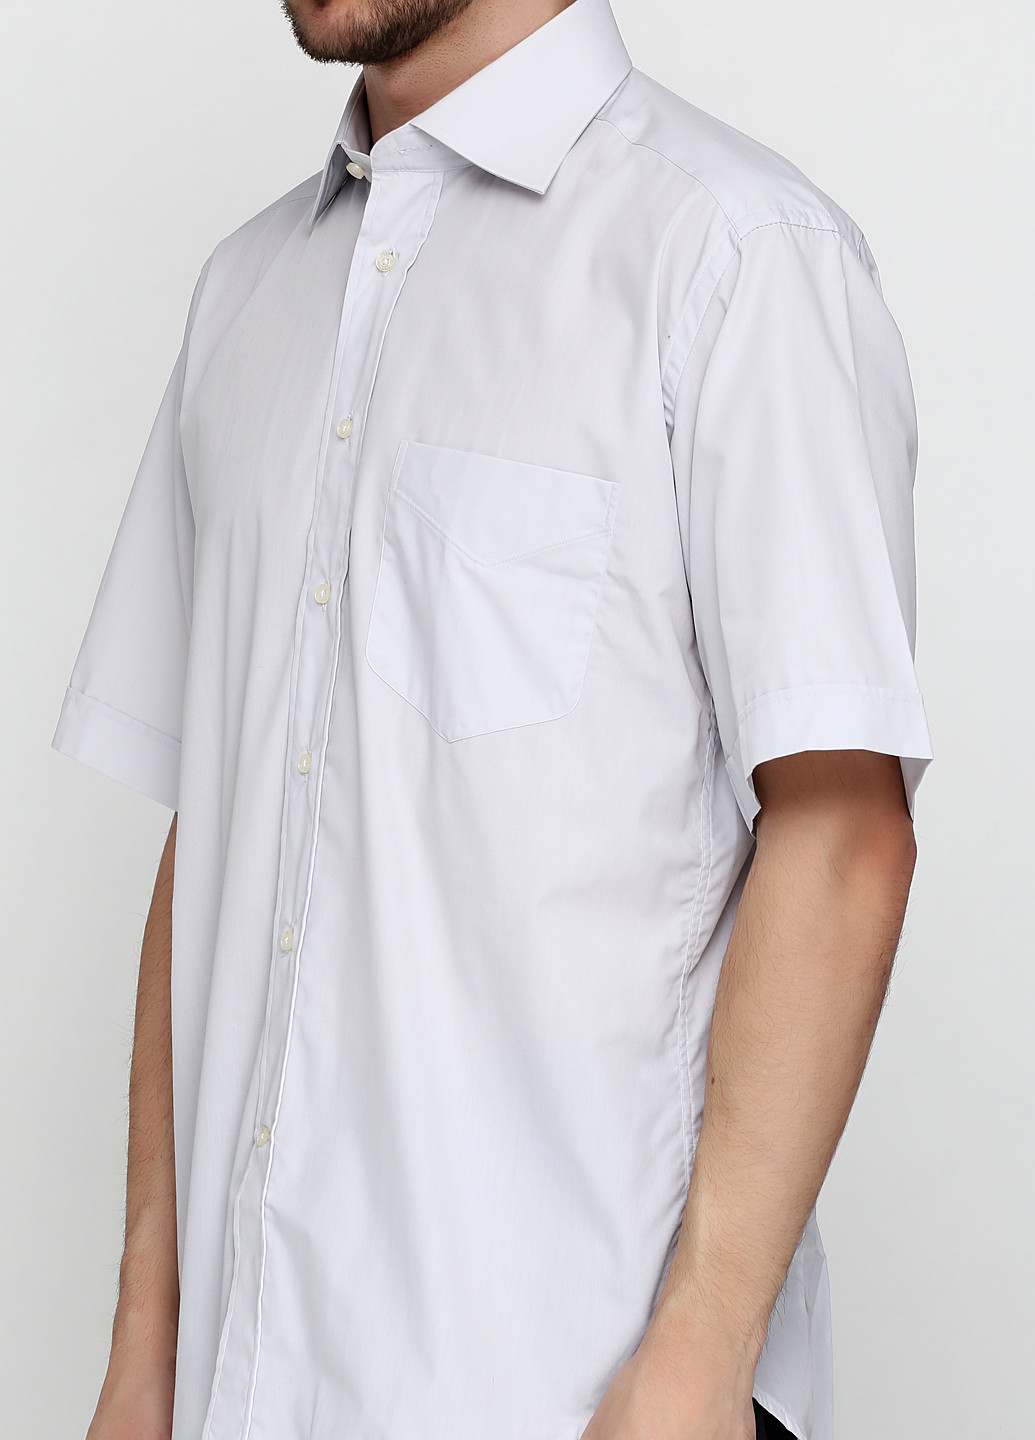 Светло-серая классическая рубашка однотонная Romano Botta с коротким рукавом